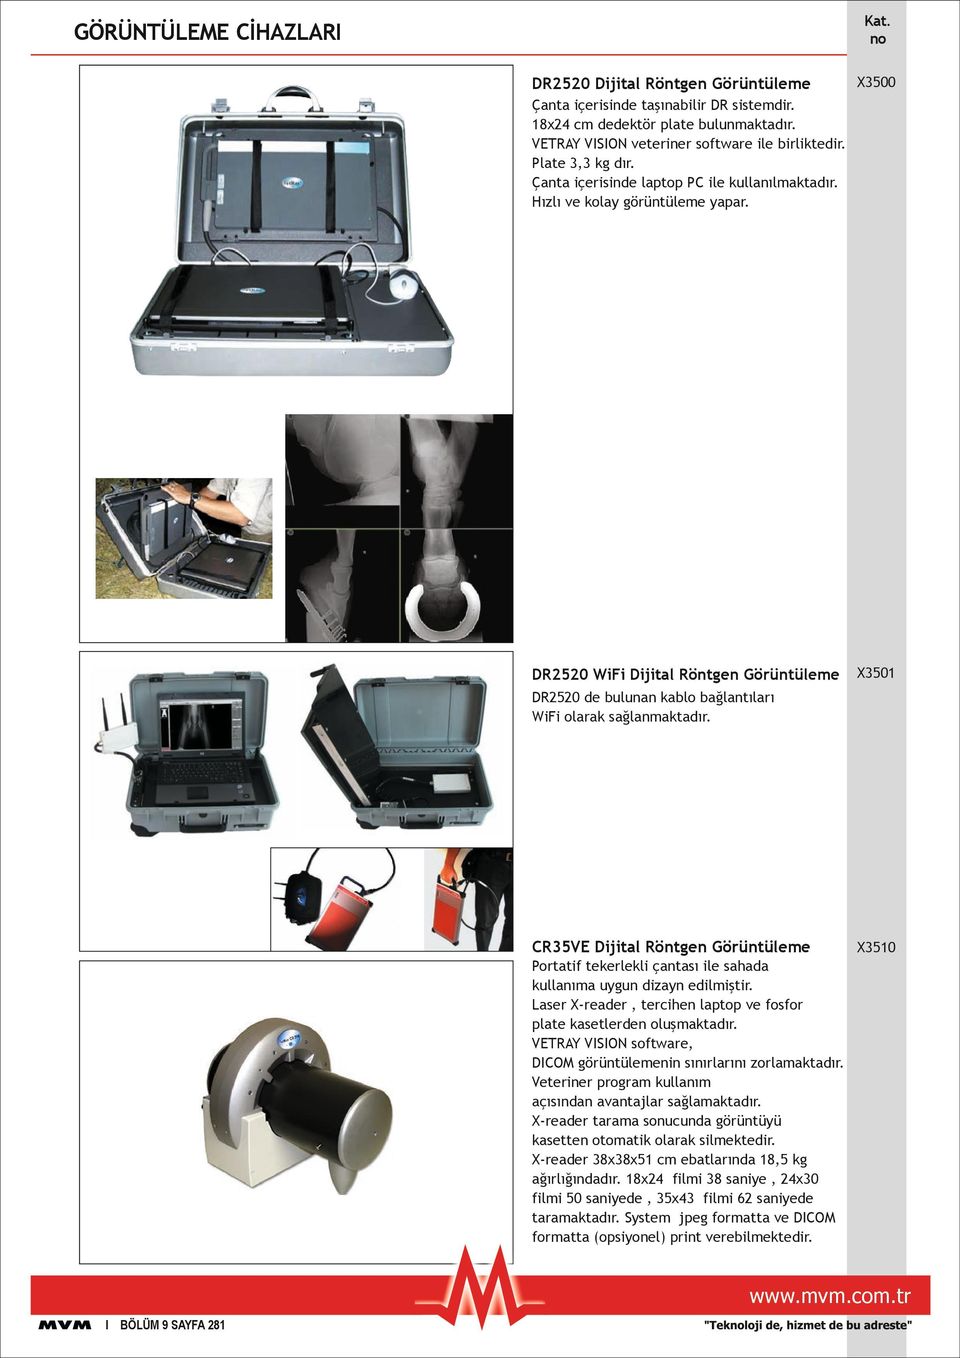 CR35VE Dijital Röntgen Görüntüleme X3510 Portatif tekerlekli çantası ile sahada kullanıma uygun dizayn edilmiştir. Laser X-reader, tercihen laptop ve fosfor plate kasetlerden oluşmaktadır.